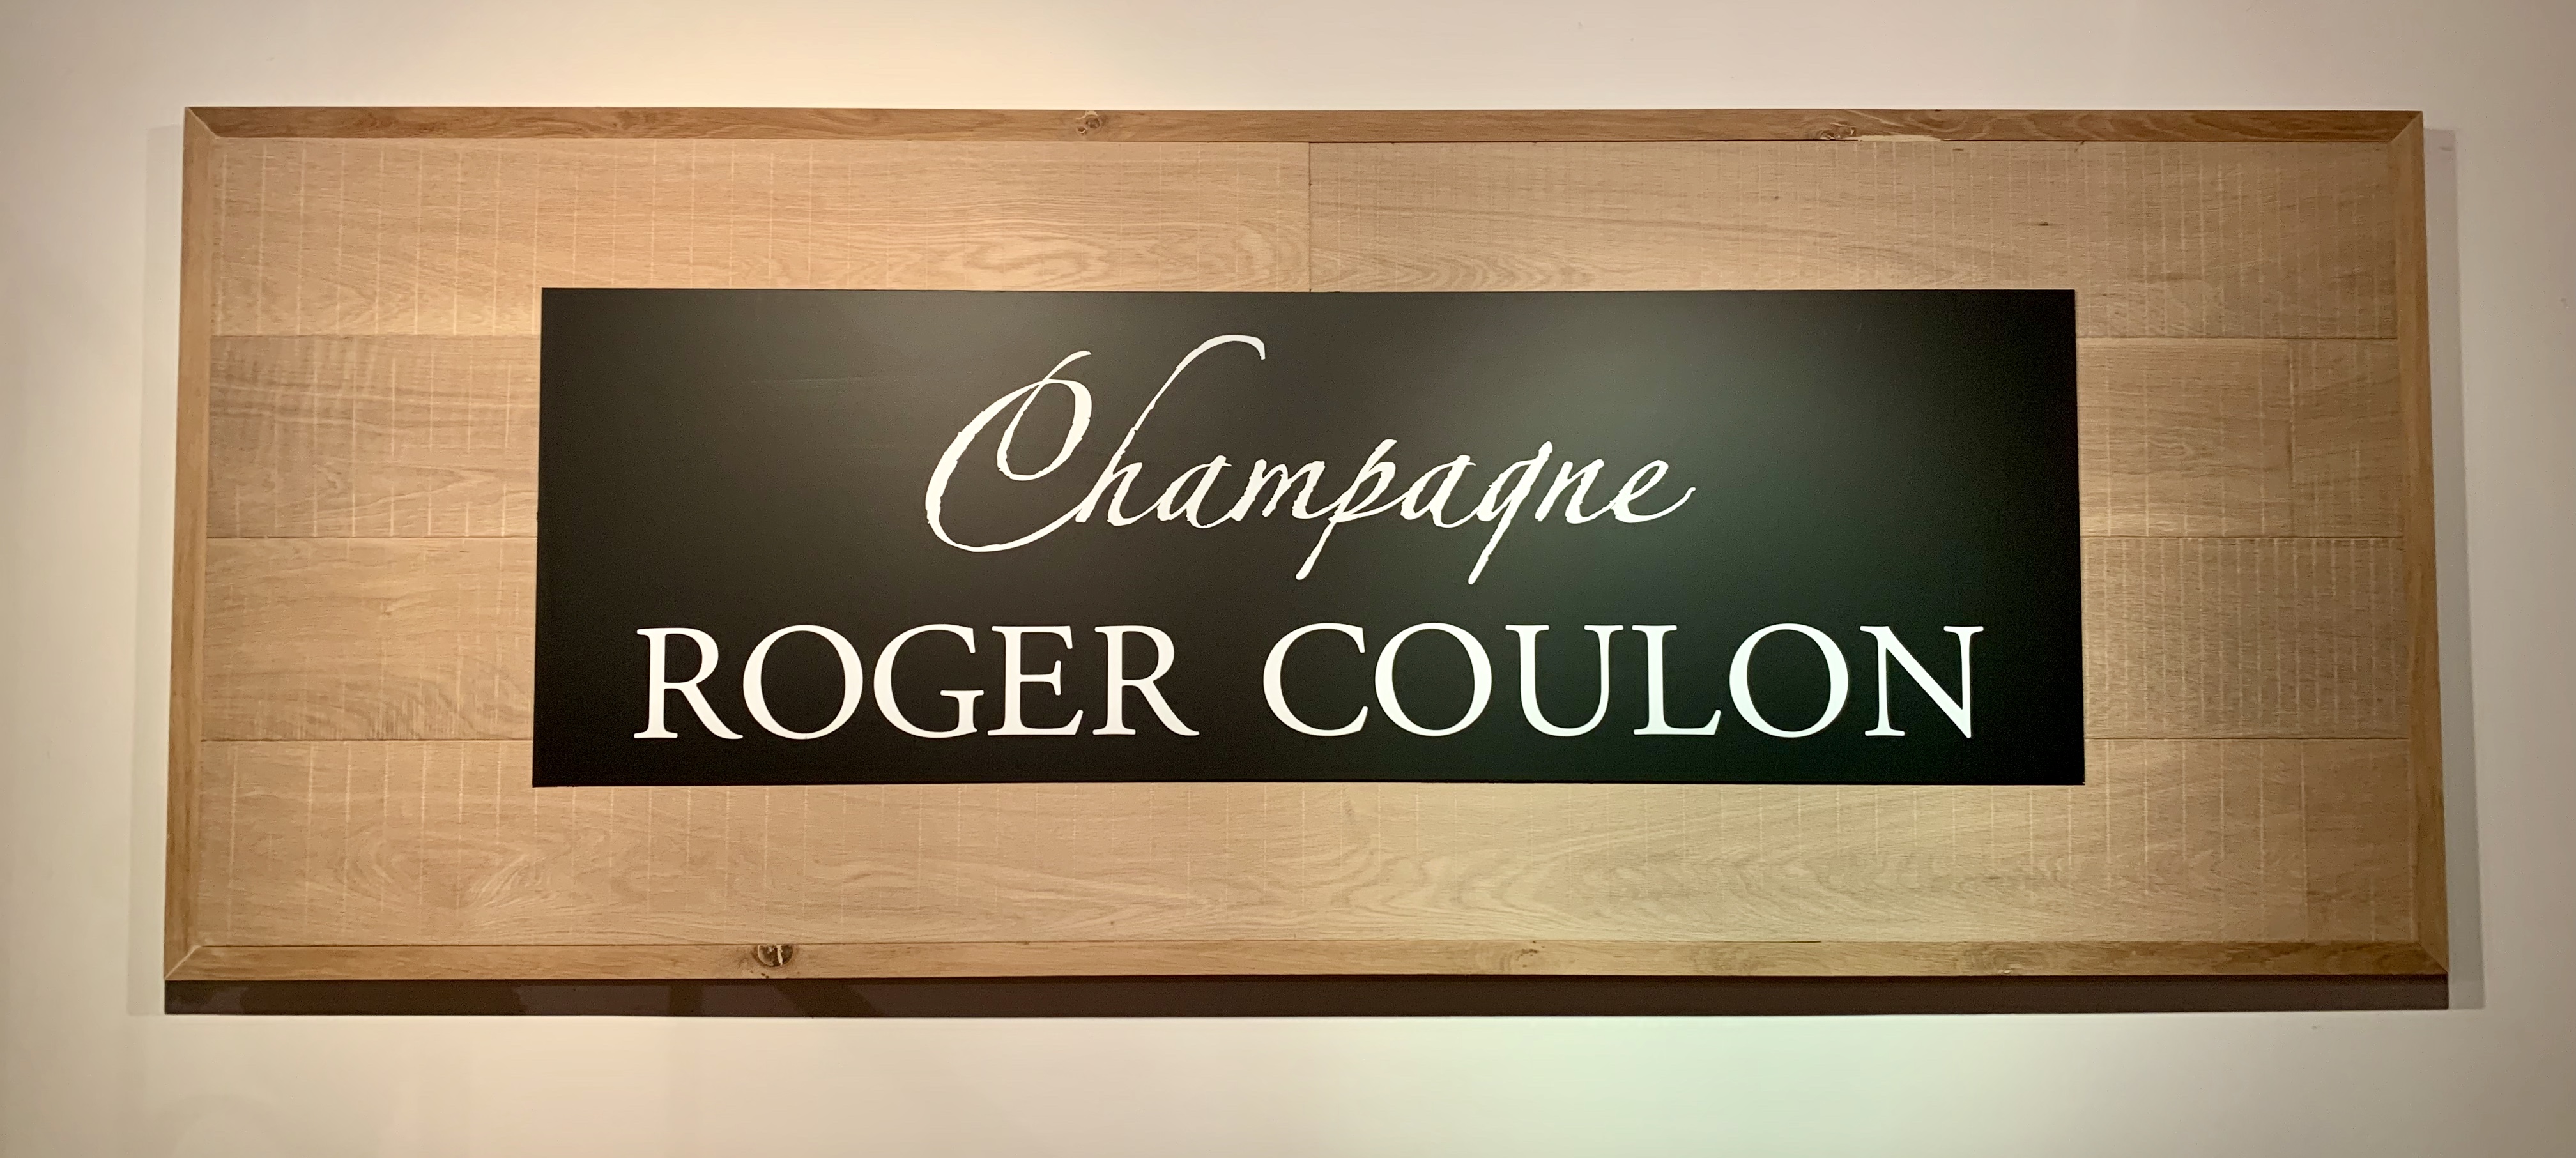 champagne-roger-coulon-france-lustforthesublime